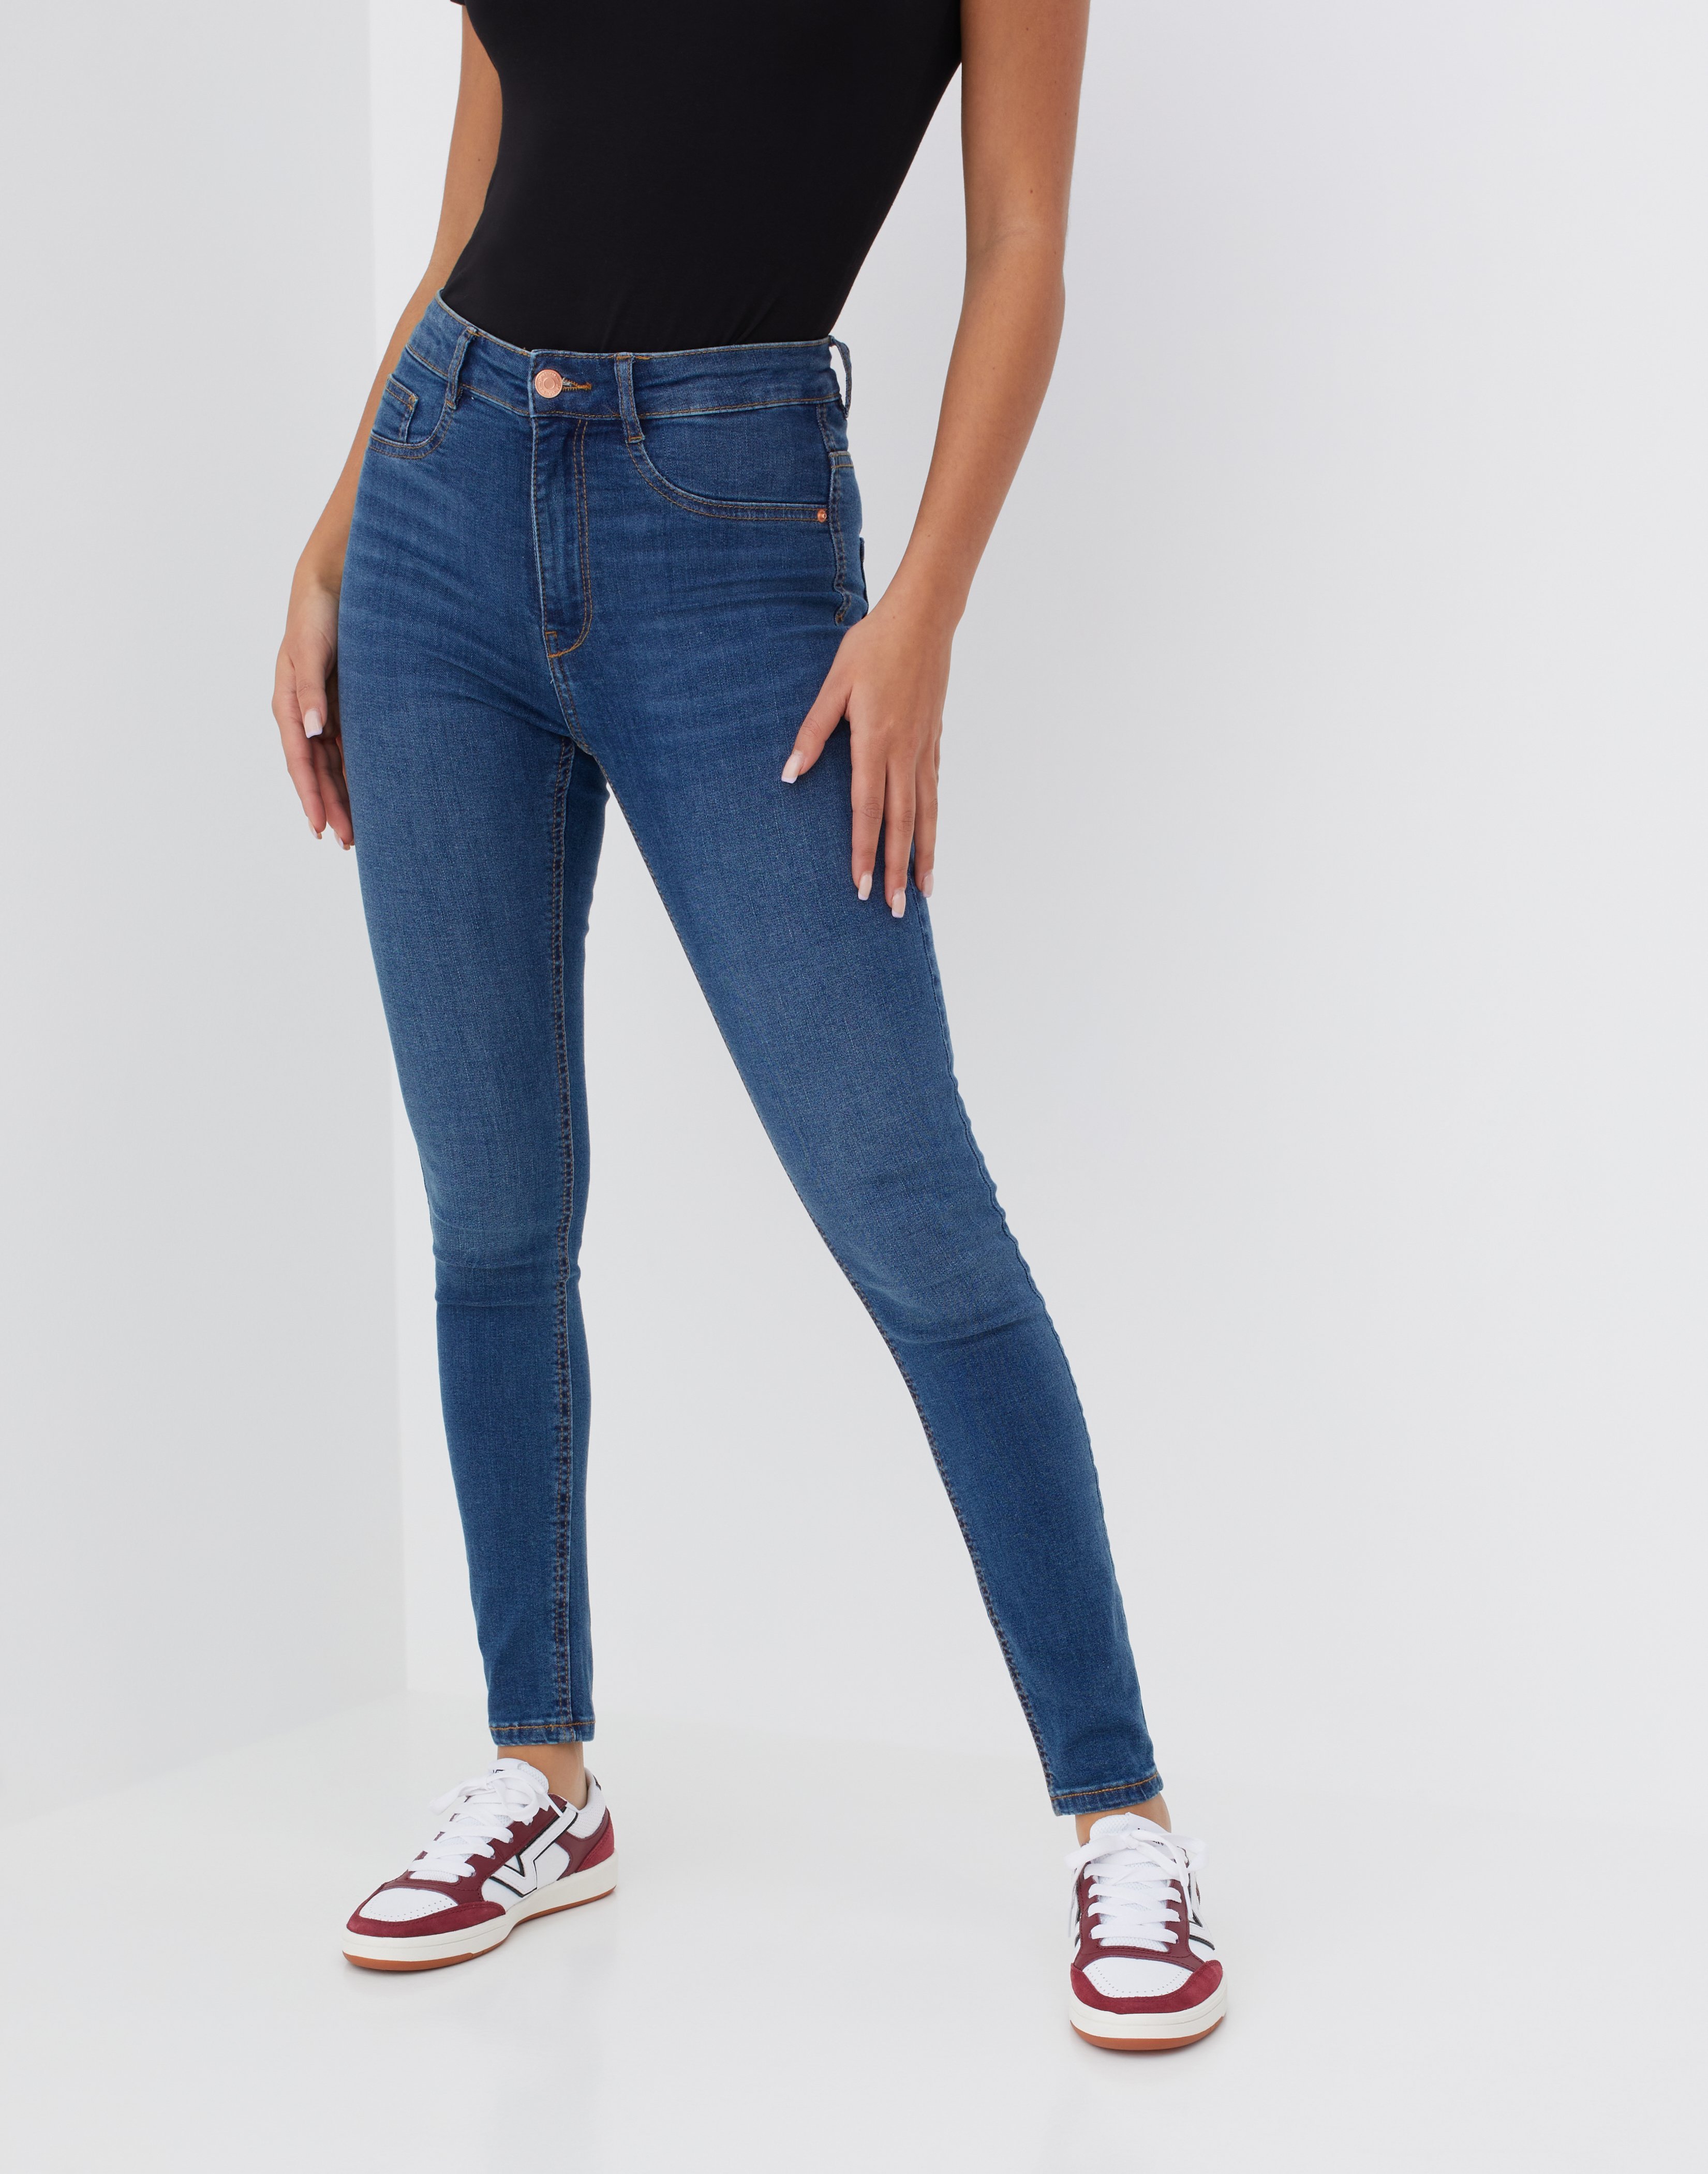 women's plus size jeans size 26